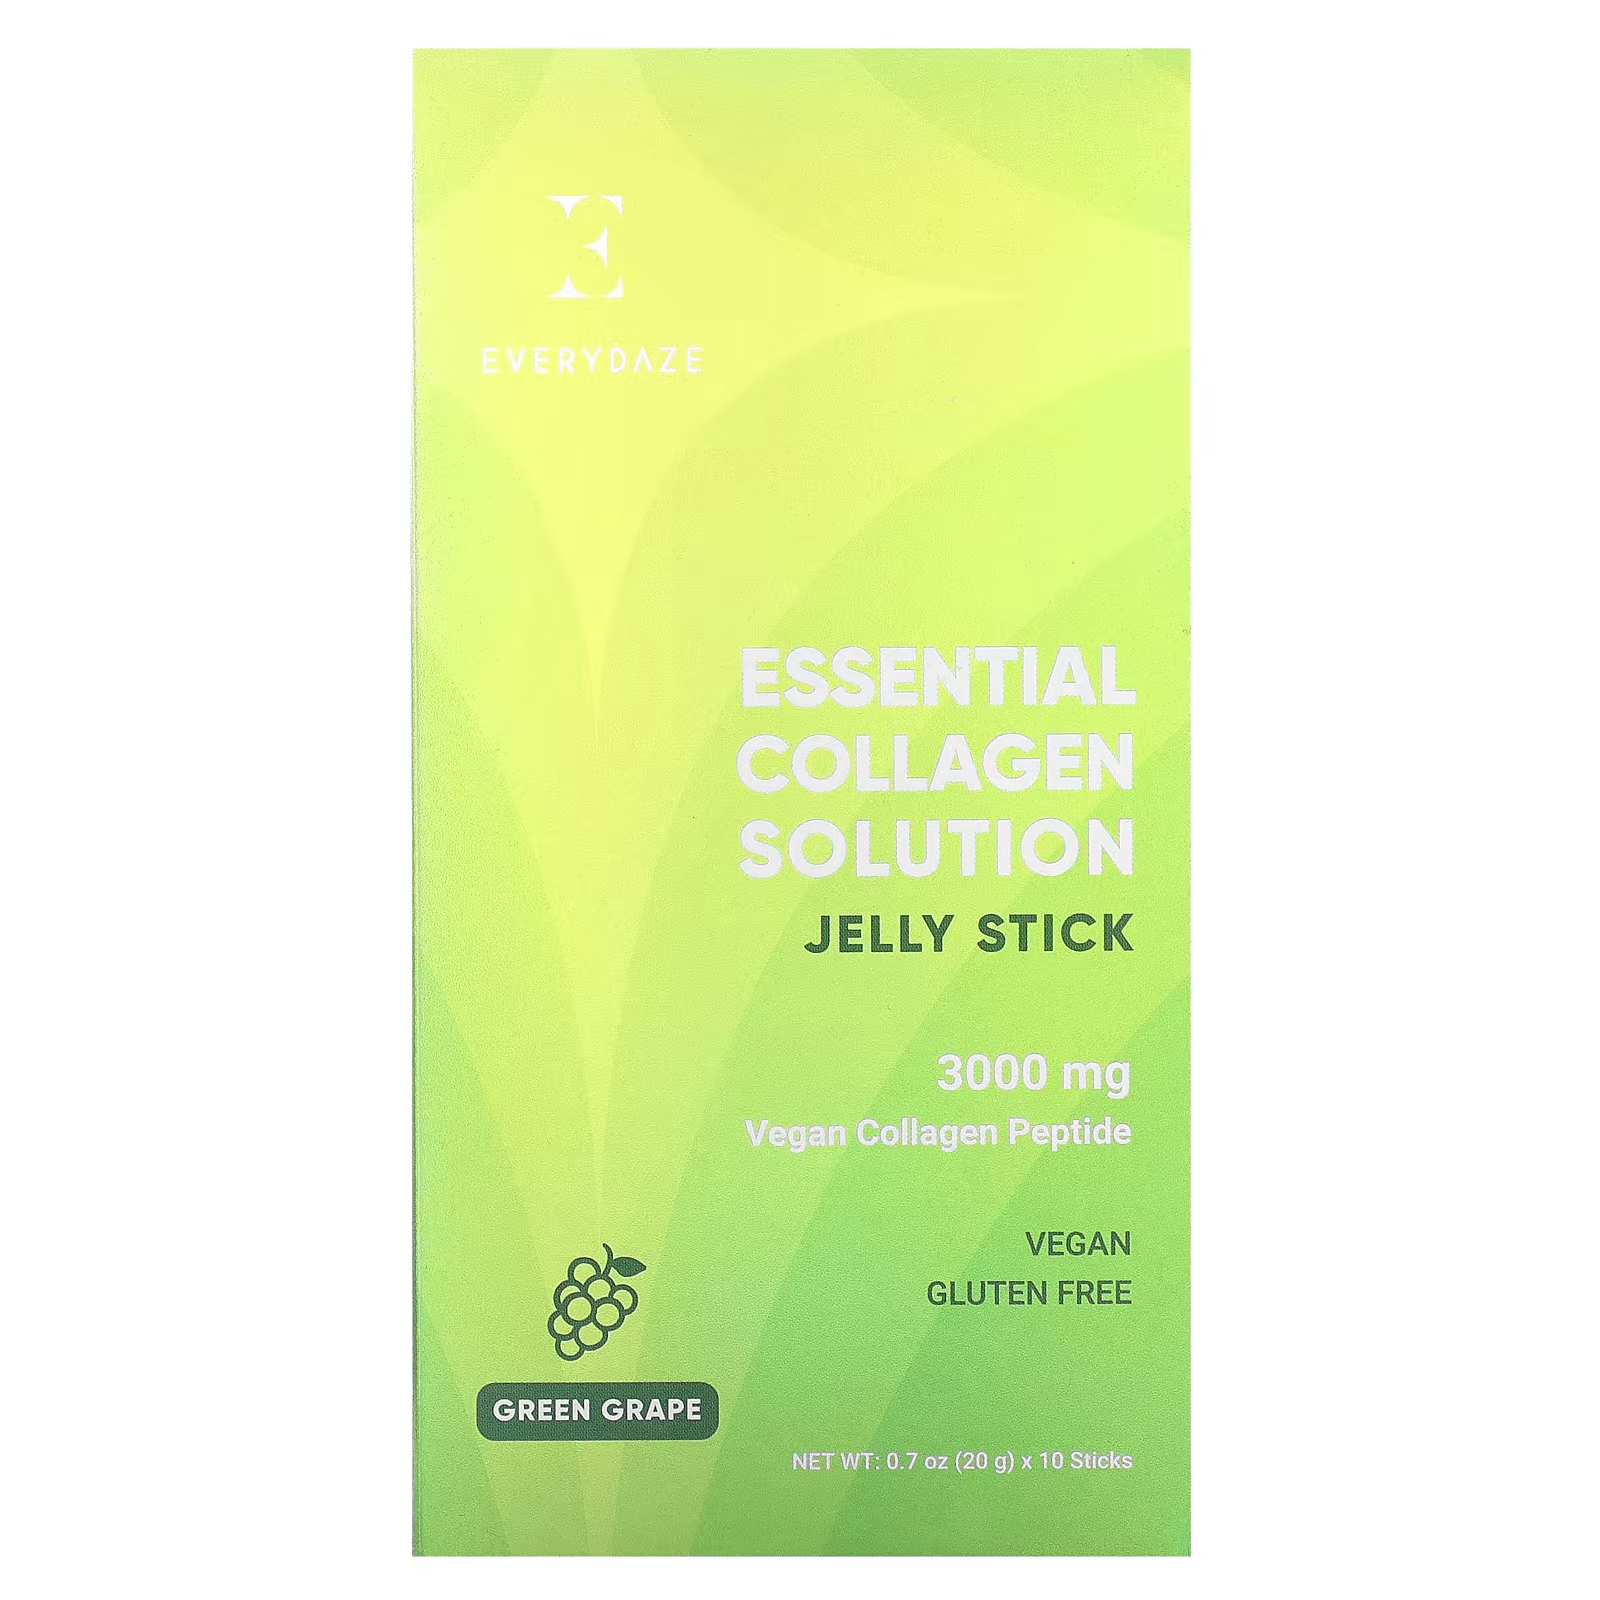 Пищевая добавка Everydaze Essential Collagen Solution Jelly Stick зеленый виноград, 10 стиков по 20 г